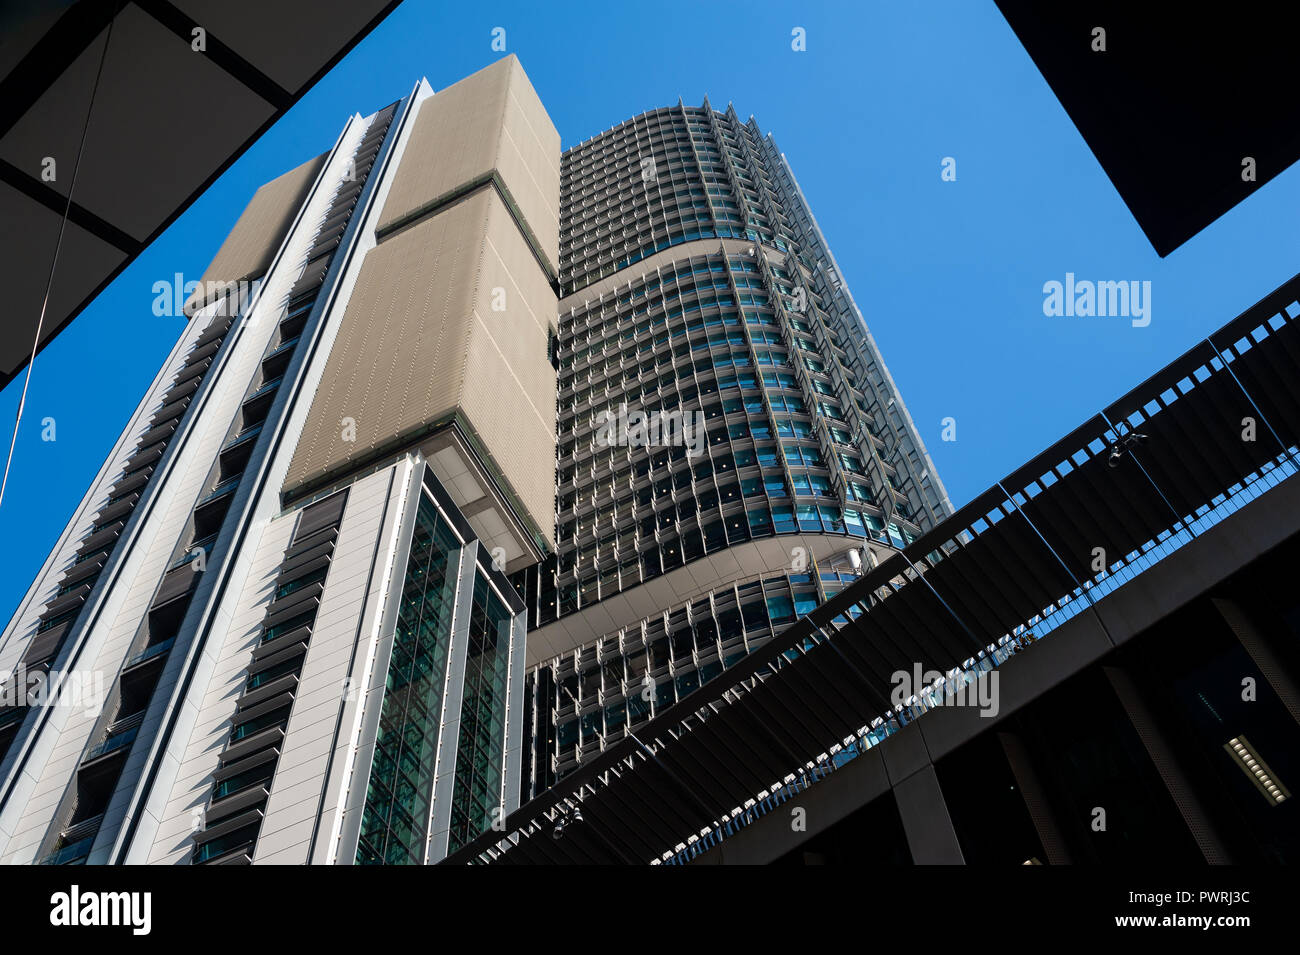 17.09.2018, Sydney, New South Wales, Australien - ein Blick auf die Moderne internationale Towers Bürogebäude in Barangaroo Süden mit Blick auf den Darling Harbour. Stockfoto